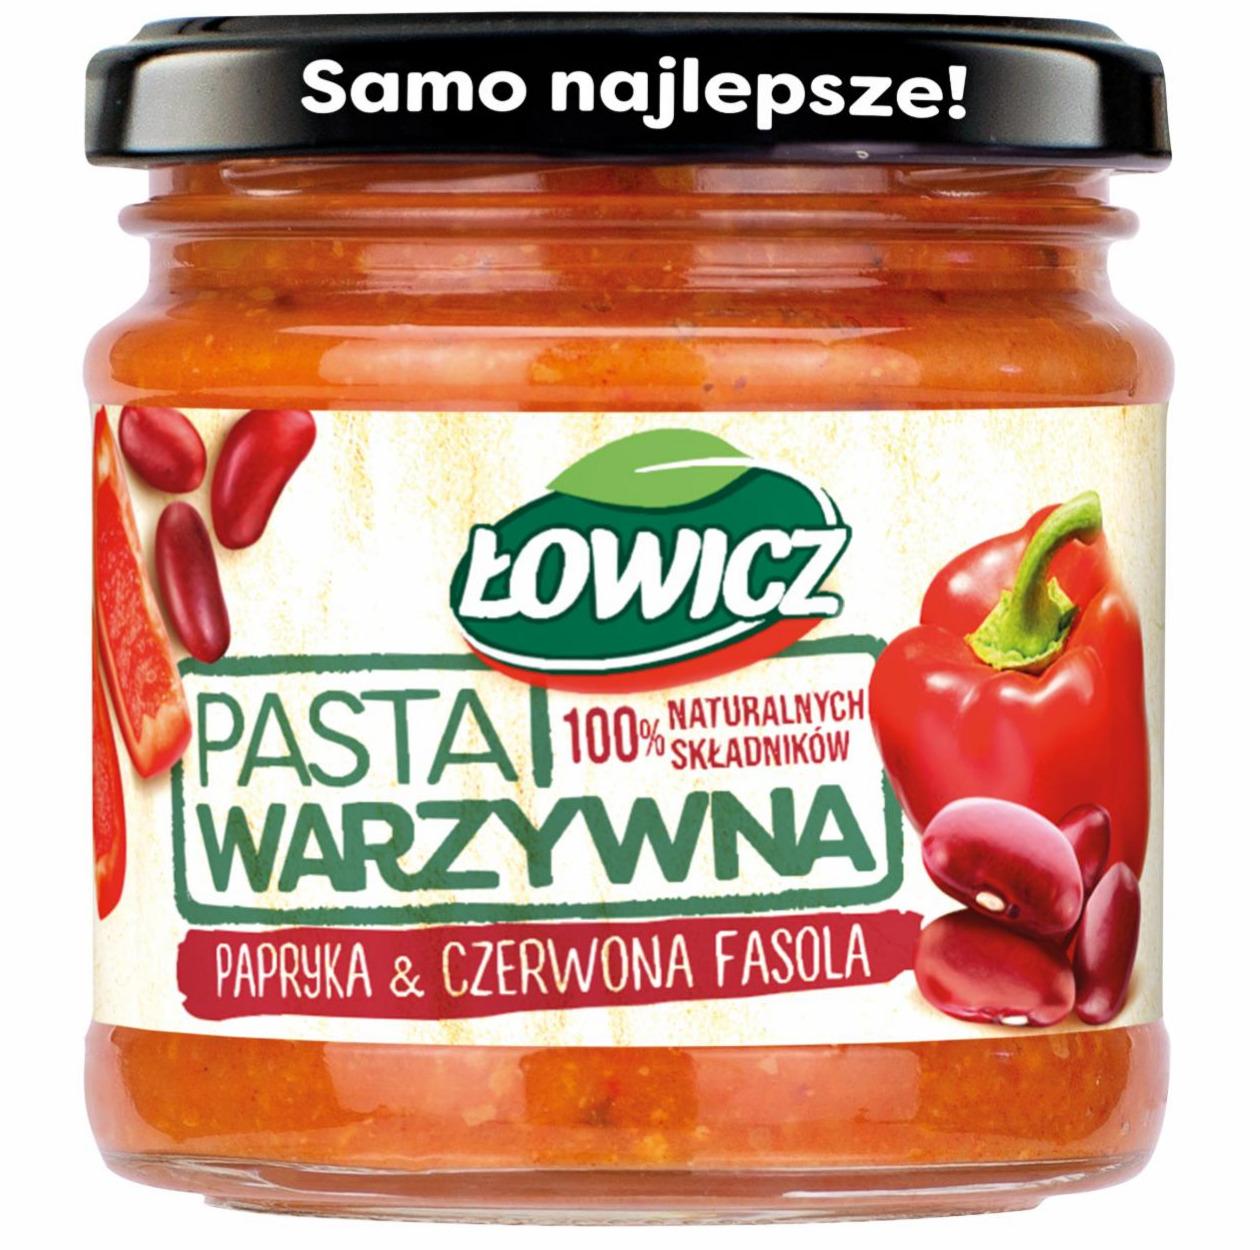 Zdjęcia - Łowicz Pasta warzywna papryka & czerwona fasola 180 g